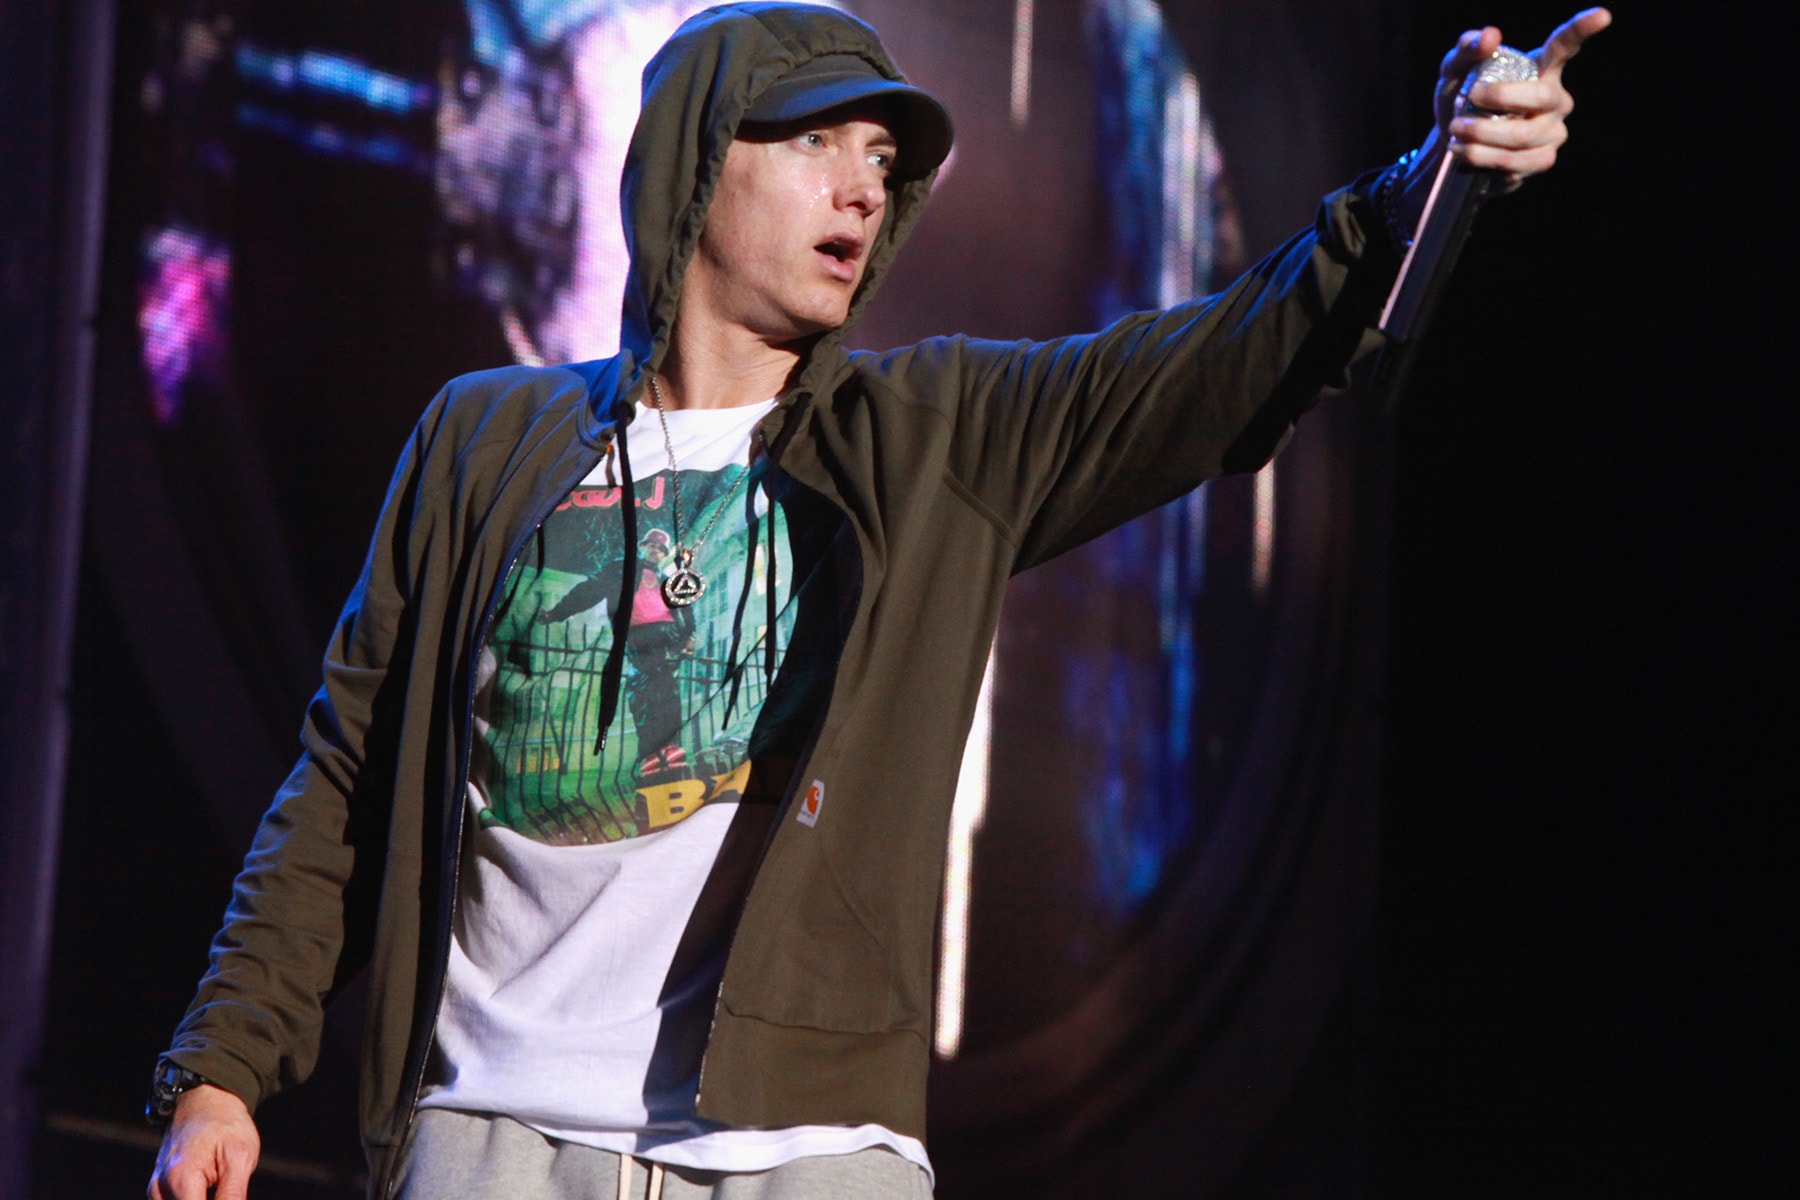 Eminem が薬物断ち10周年を祝す喜びの声をツイート 男の友情が垣間見えるRoyce da 5’9”のエールを込めたツイートにも注目 Eminem エミネム 薬物依存 ドキュメンタリー番組 How To Make Money Selling Drugs バイコディン バリウム アンビエン メサドン 10 ソブライエティ・コイン Bad Meets Evil バッド・ミーツ・イーヴィル Royce da 5’9” ロイス・ダ・ファイブ・ナイン